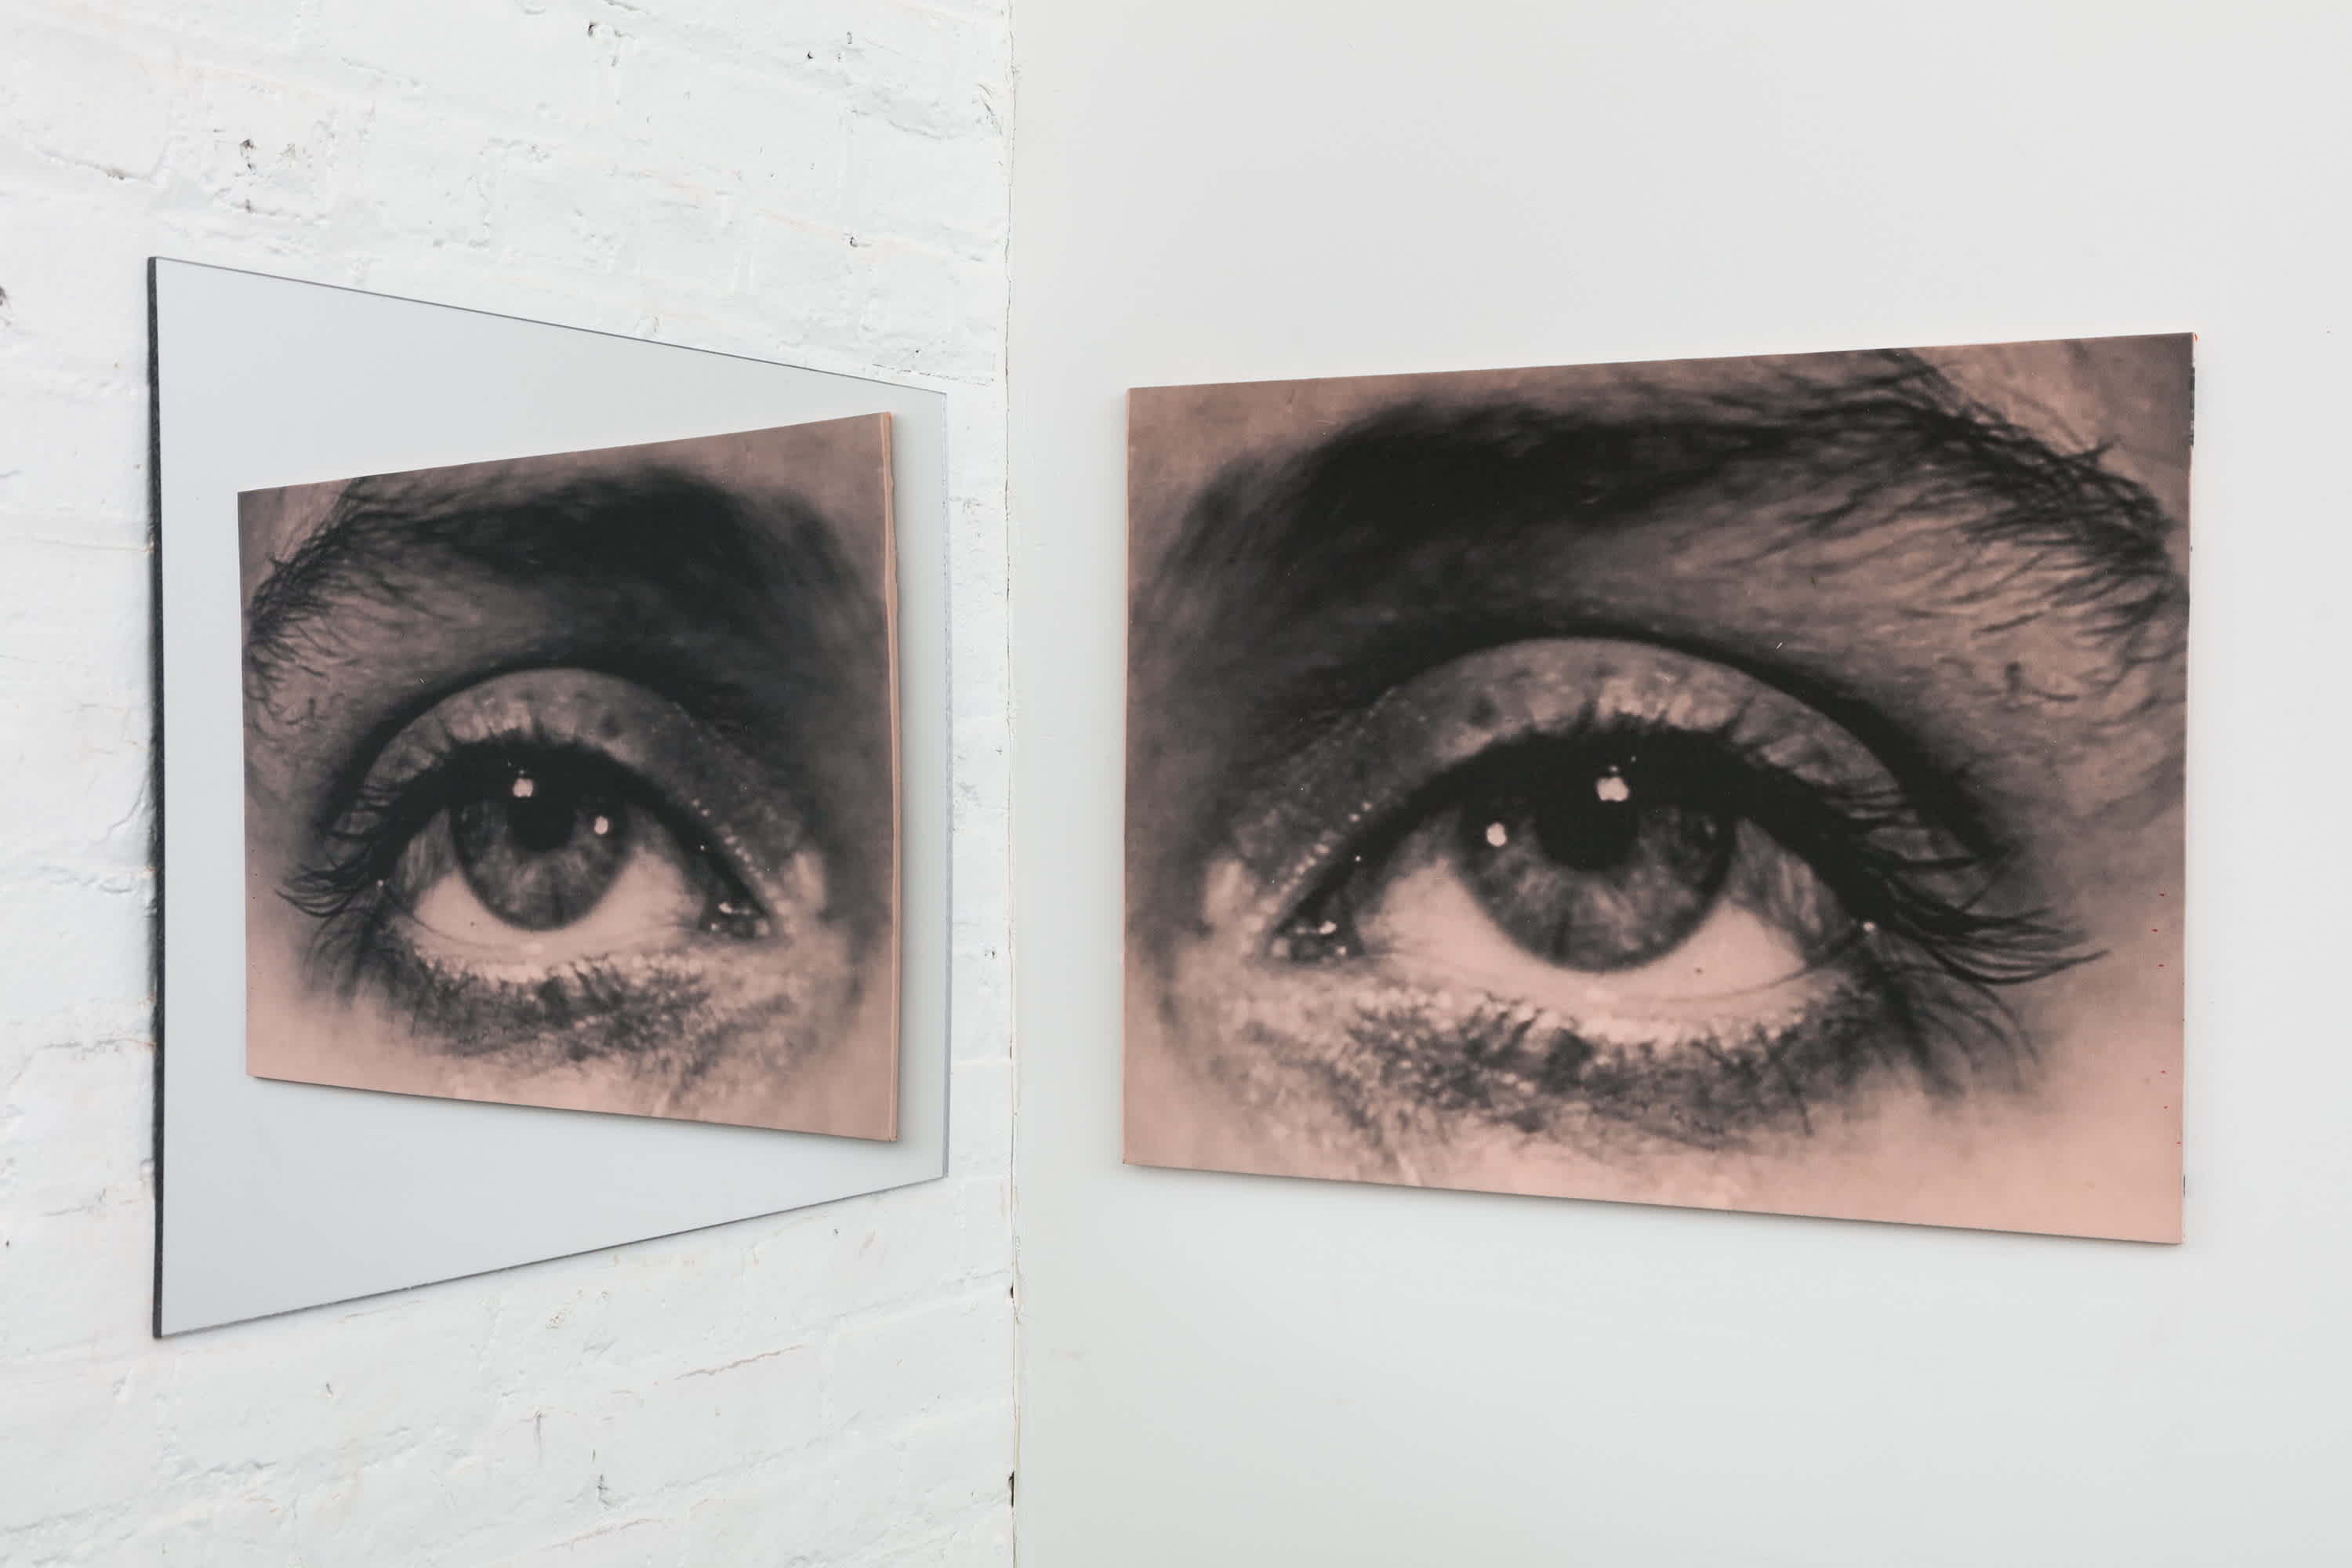 mirrored print, Lee Miller's eye